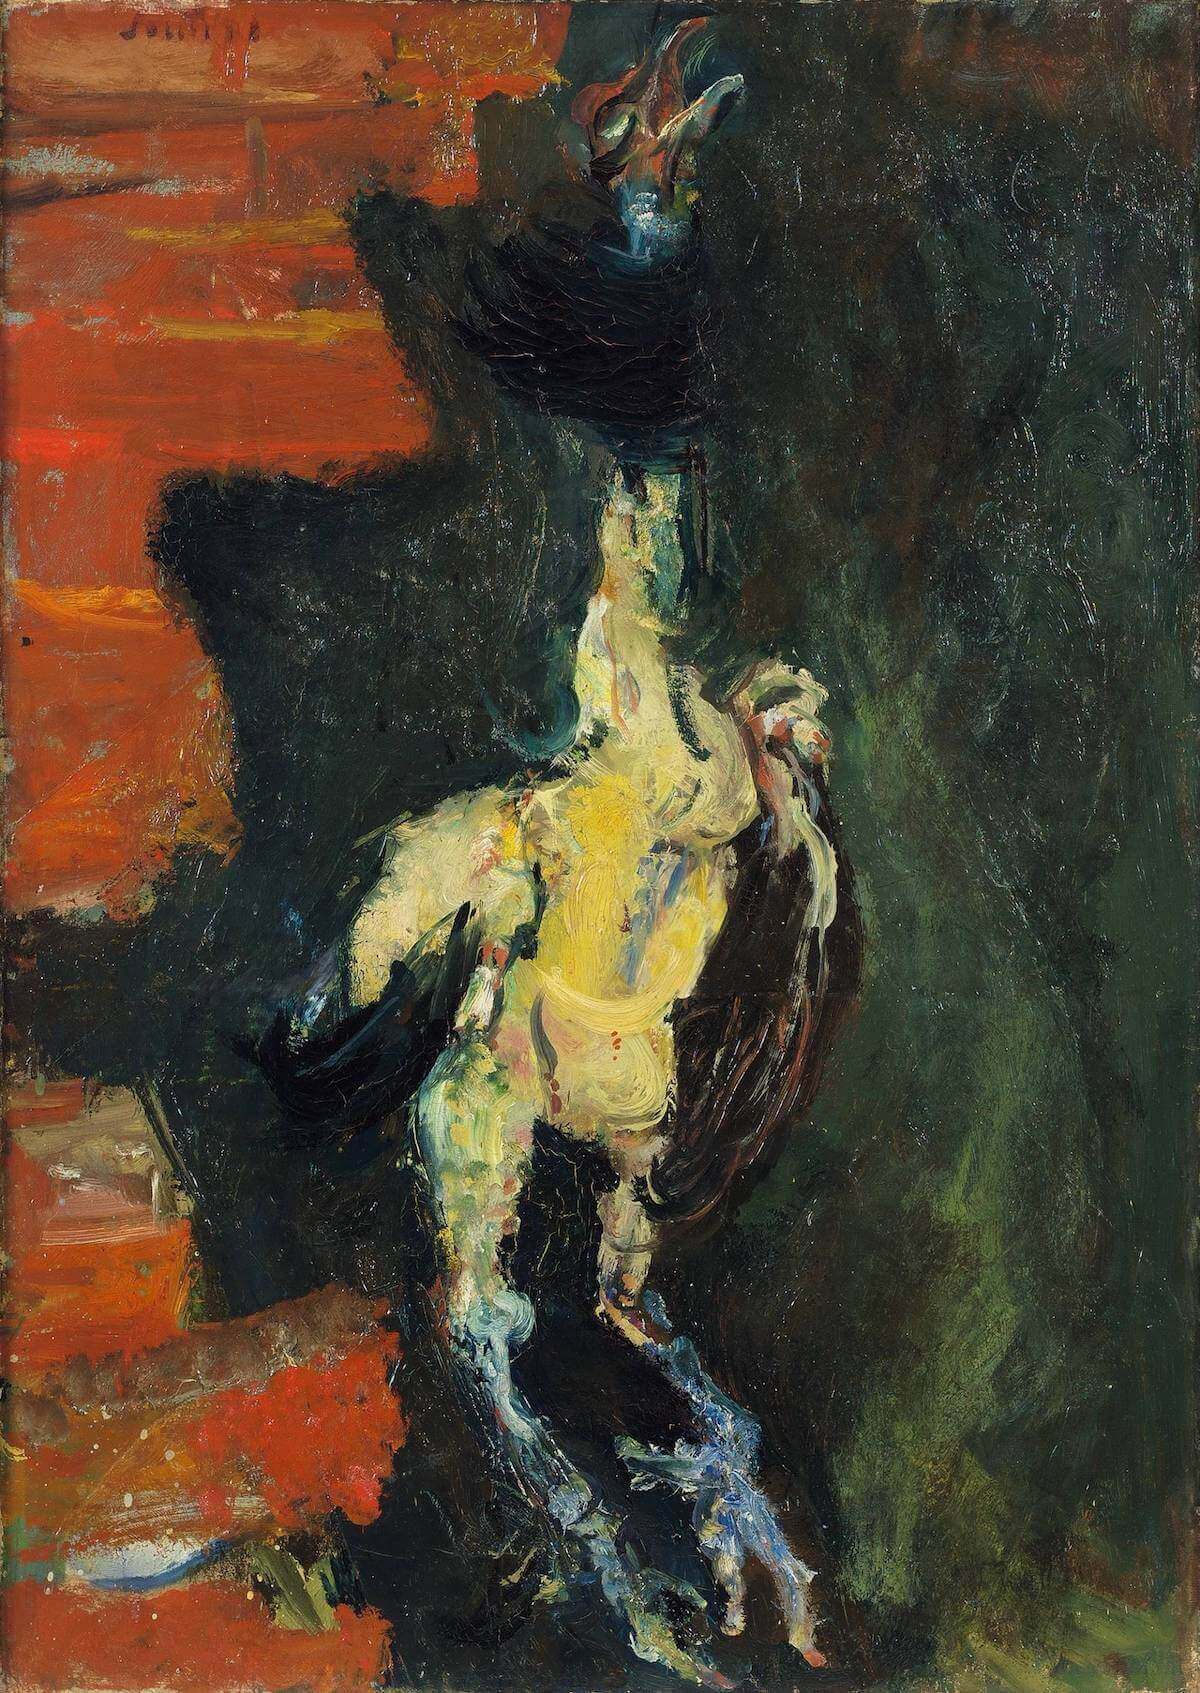 Chaïm Soutine, Le Poulet pendu devant un mur de briques (Chicken Hung Before a Brick Wall), 1925, oil on canvas, 65 x 46.5 cm (Le musée d'art de Berne)